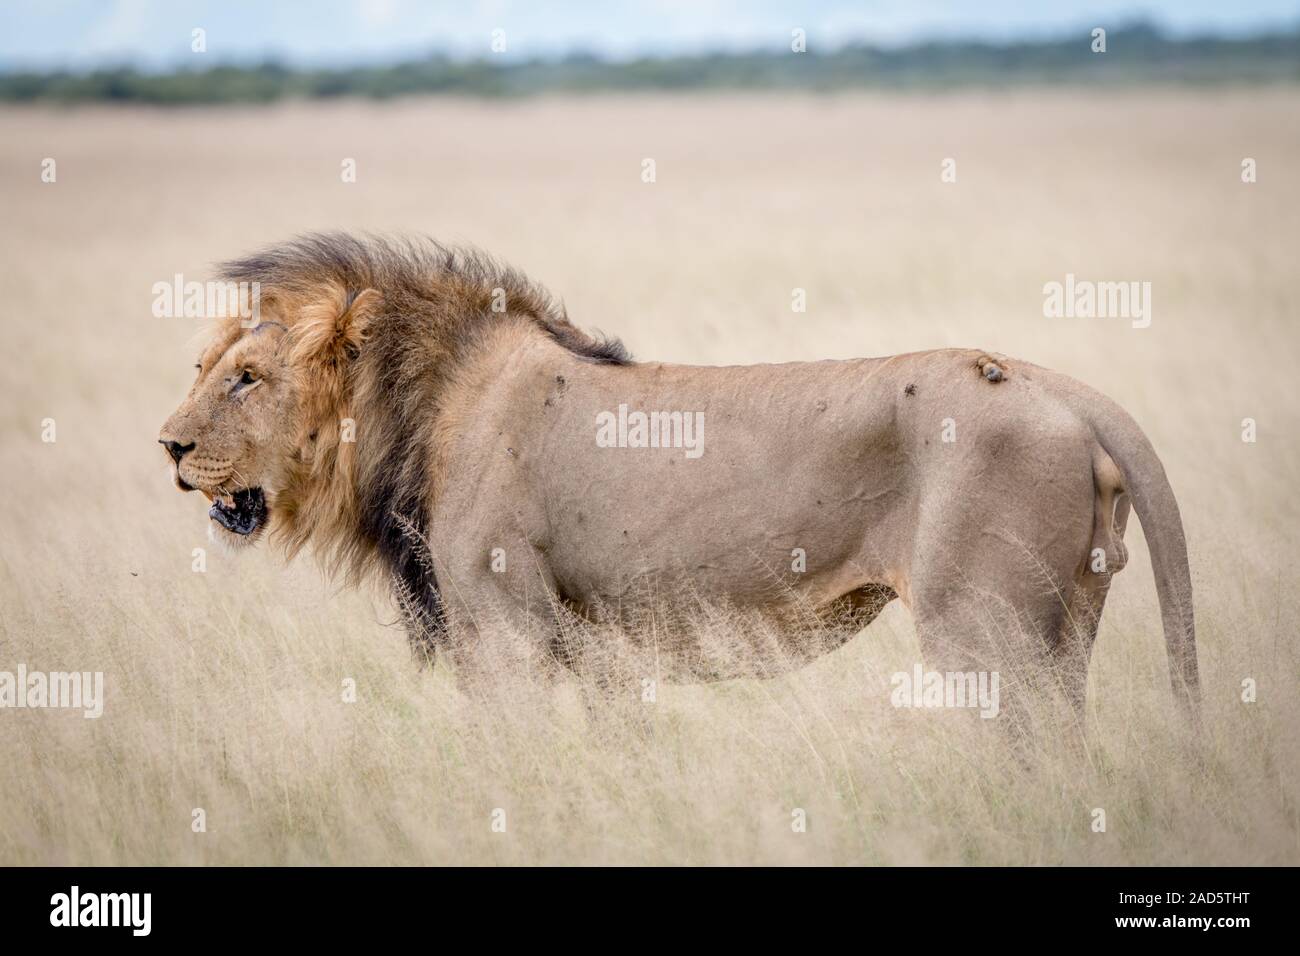 Profil de côté d'un grand mâle Lion dans l'herbe. Banque D'Images